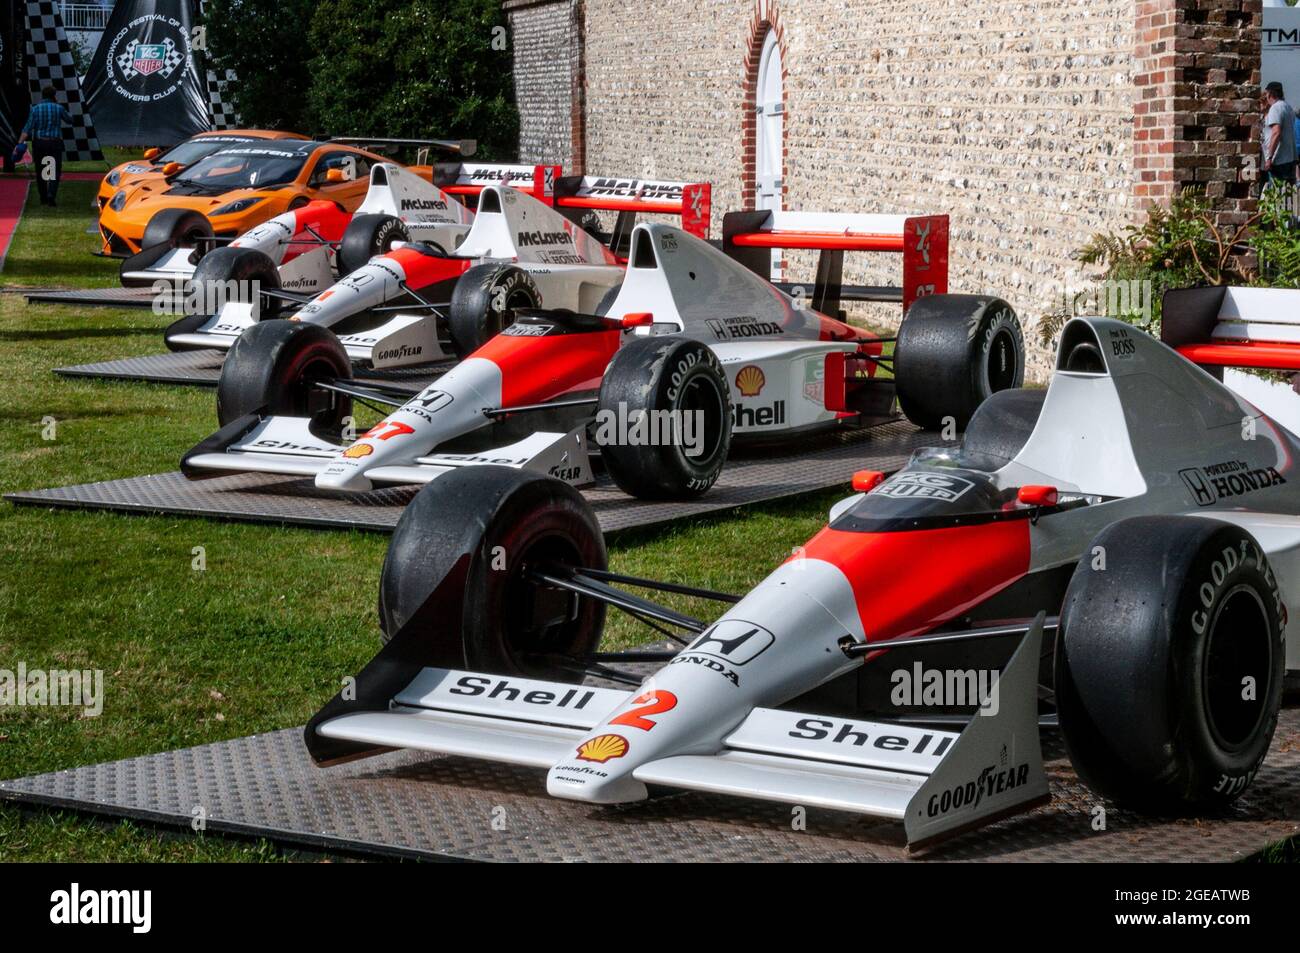 Des voitures McLaren Grand Prix historiques exposées dans le club de pilotes de Blackrock lors de la course automobile Goodwood Festival of Speed 2014. Traçabilité Banque D'Images